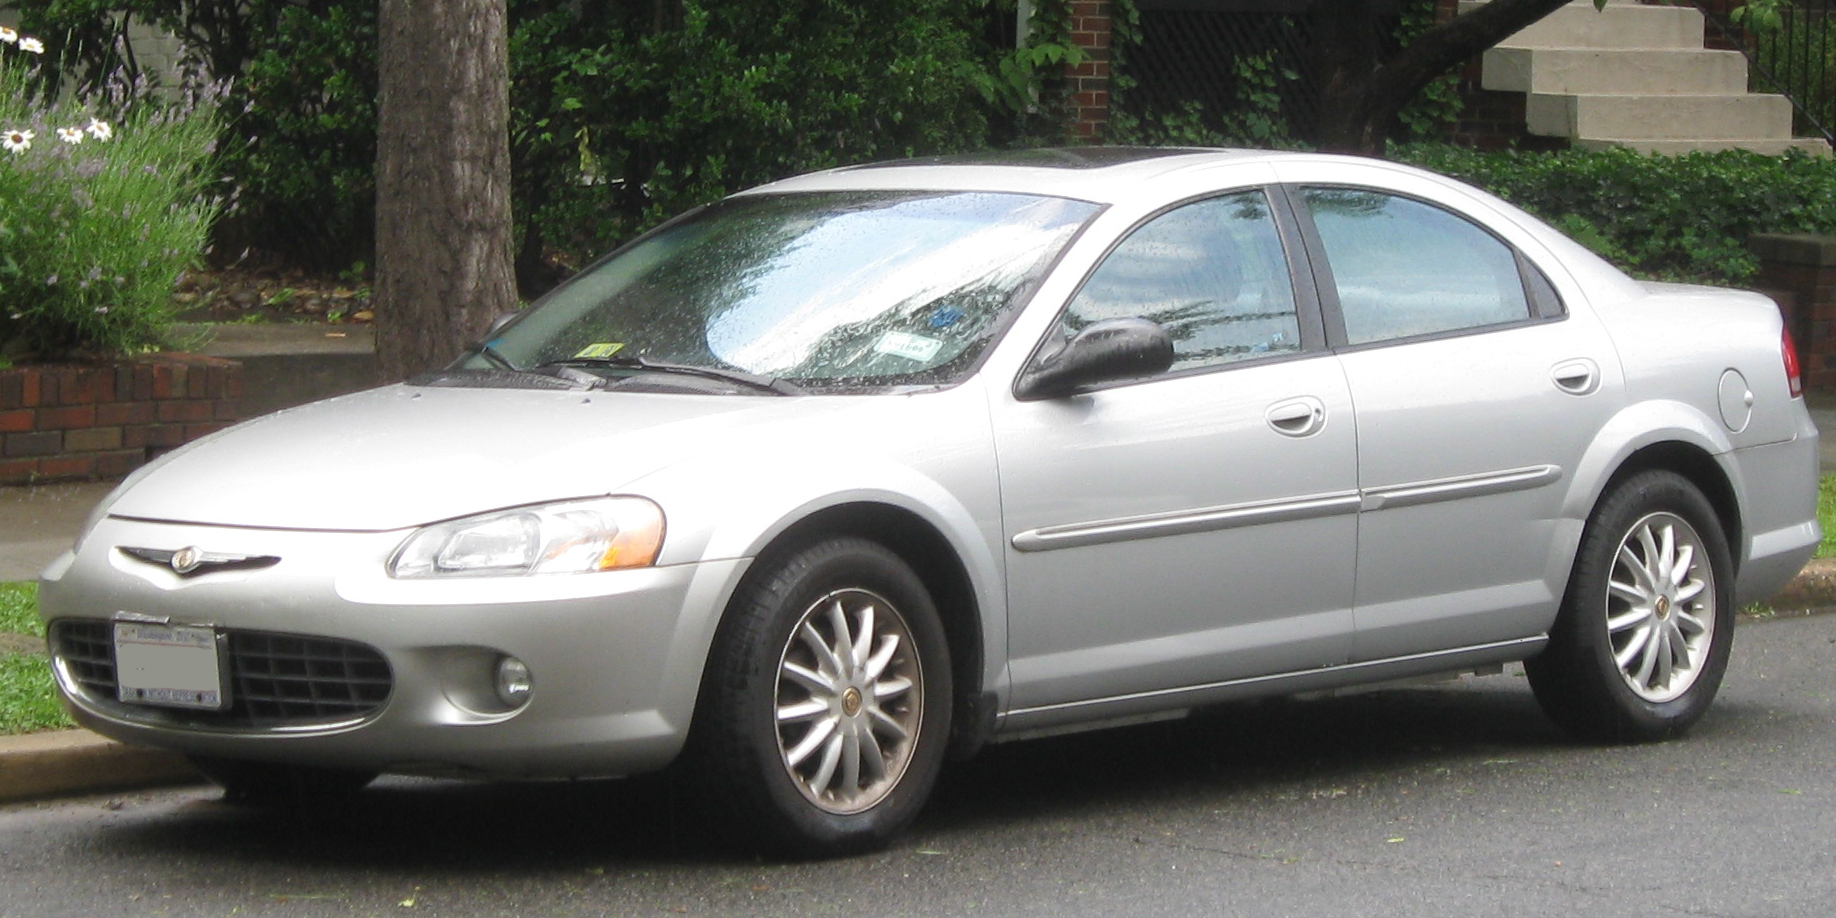 File:2001-2003 Chrysler Sebring.jpg - Wikipedia